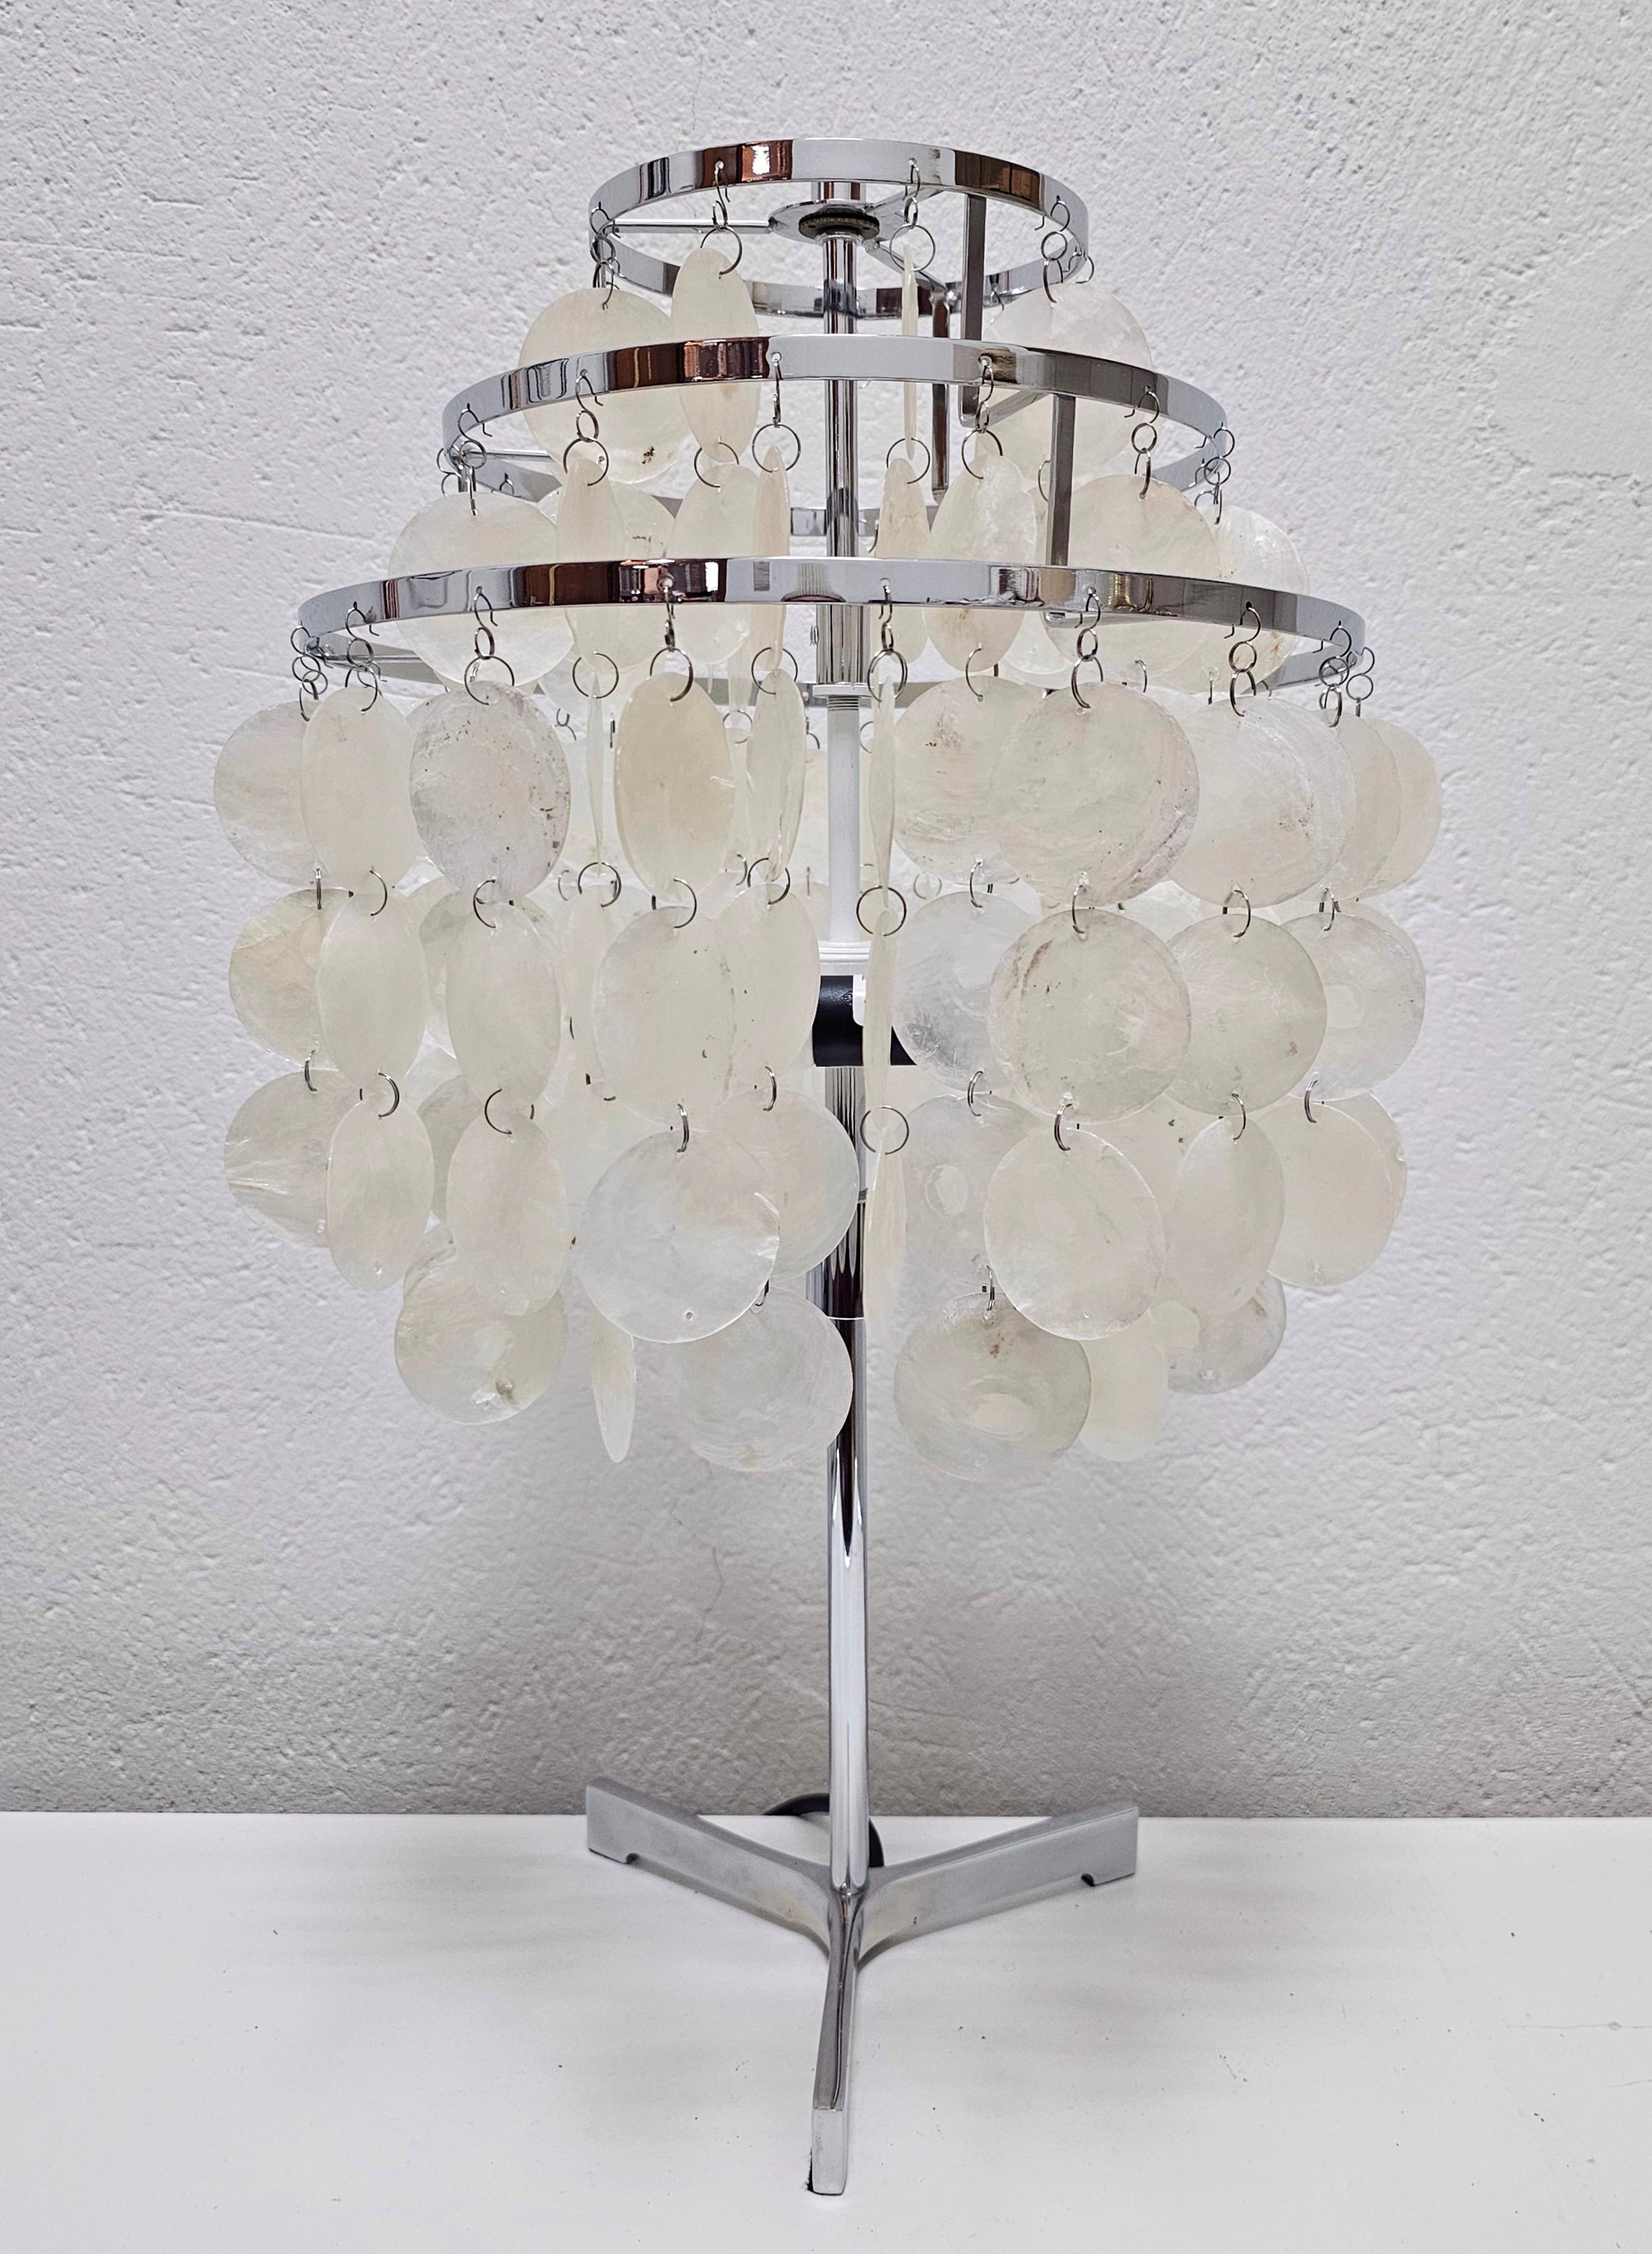 Dans cette annonce, vous trouverez une superbe lampe de table Mid Century Modern avec un abat-jour fait de coquillages et un support en acier inoxydable. La lampe est conçue dans le style de la lampe Fantasy de Verner Panton. Fabriqué aux États-Unis